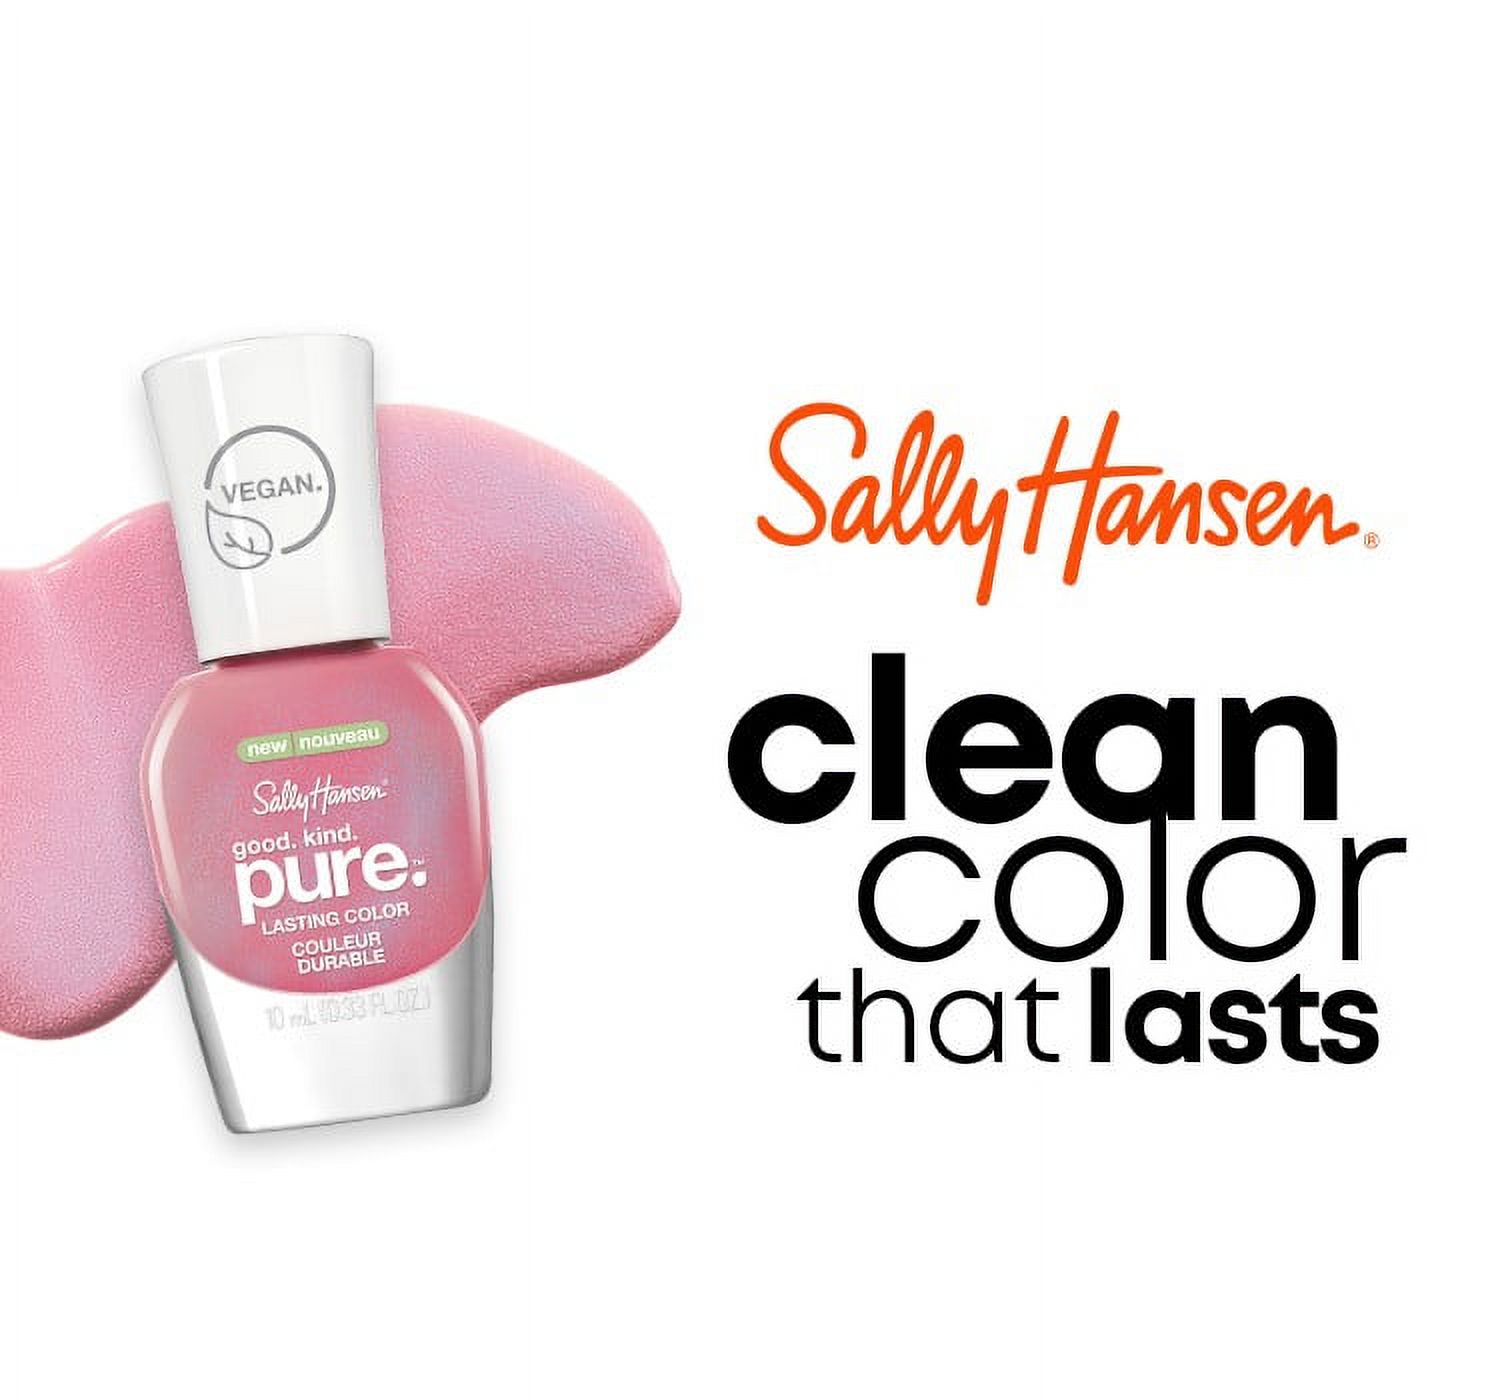 Sally Hansen Good.Kind.Pure. Vegan Nail Polish, Crystal Blue, 0.33 oz, Clean Nail Polish - image 5 of 21